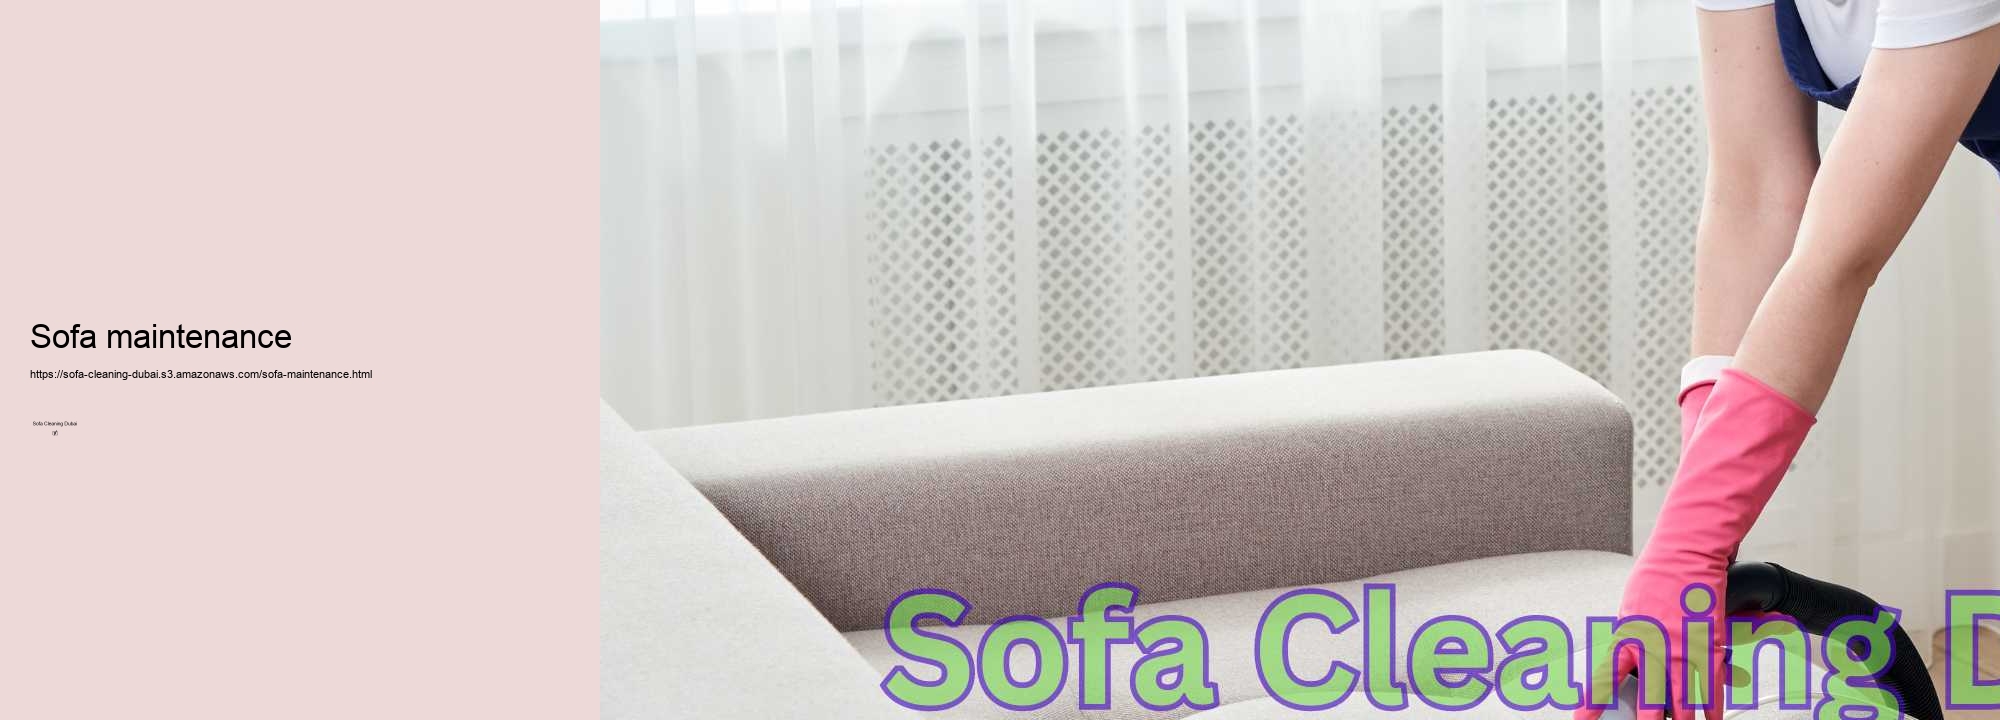 Sofa maintenance